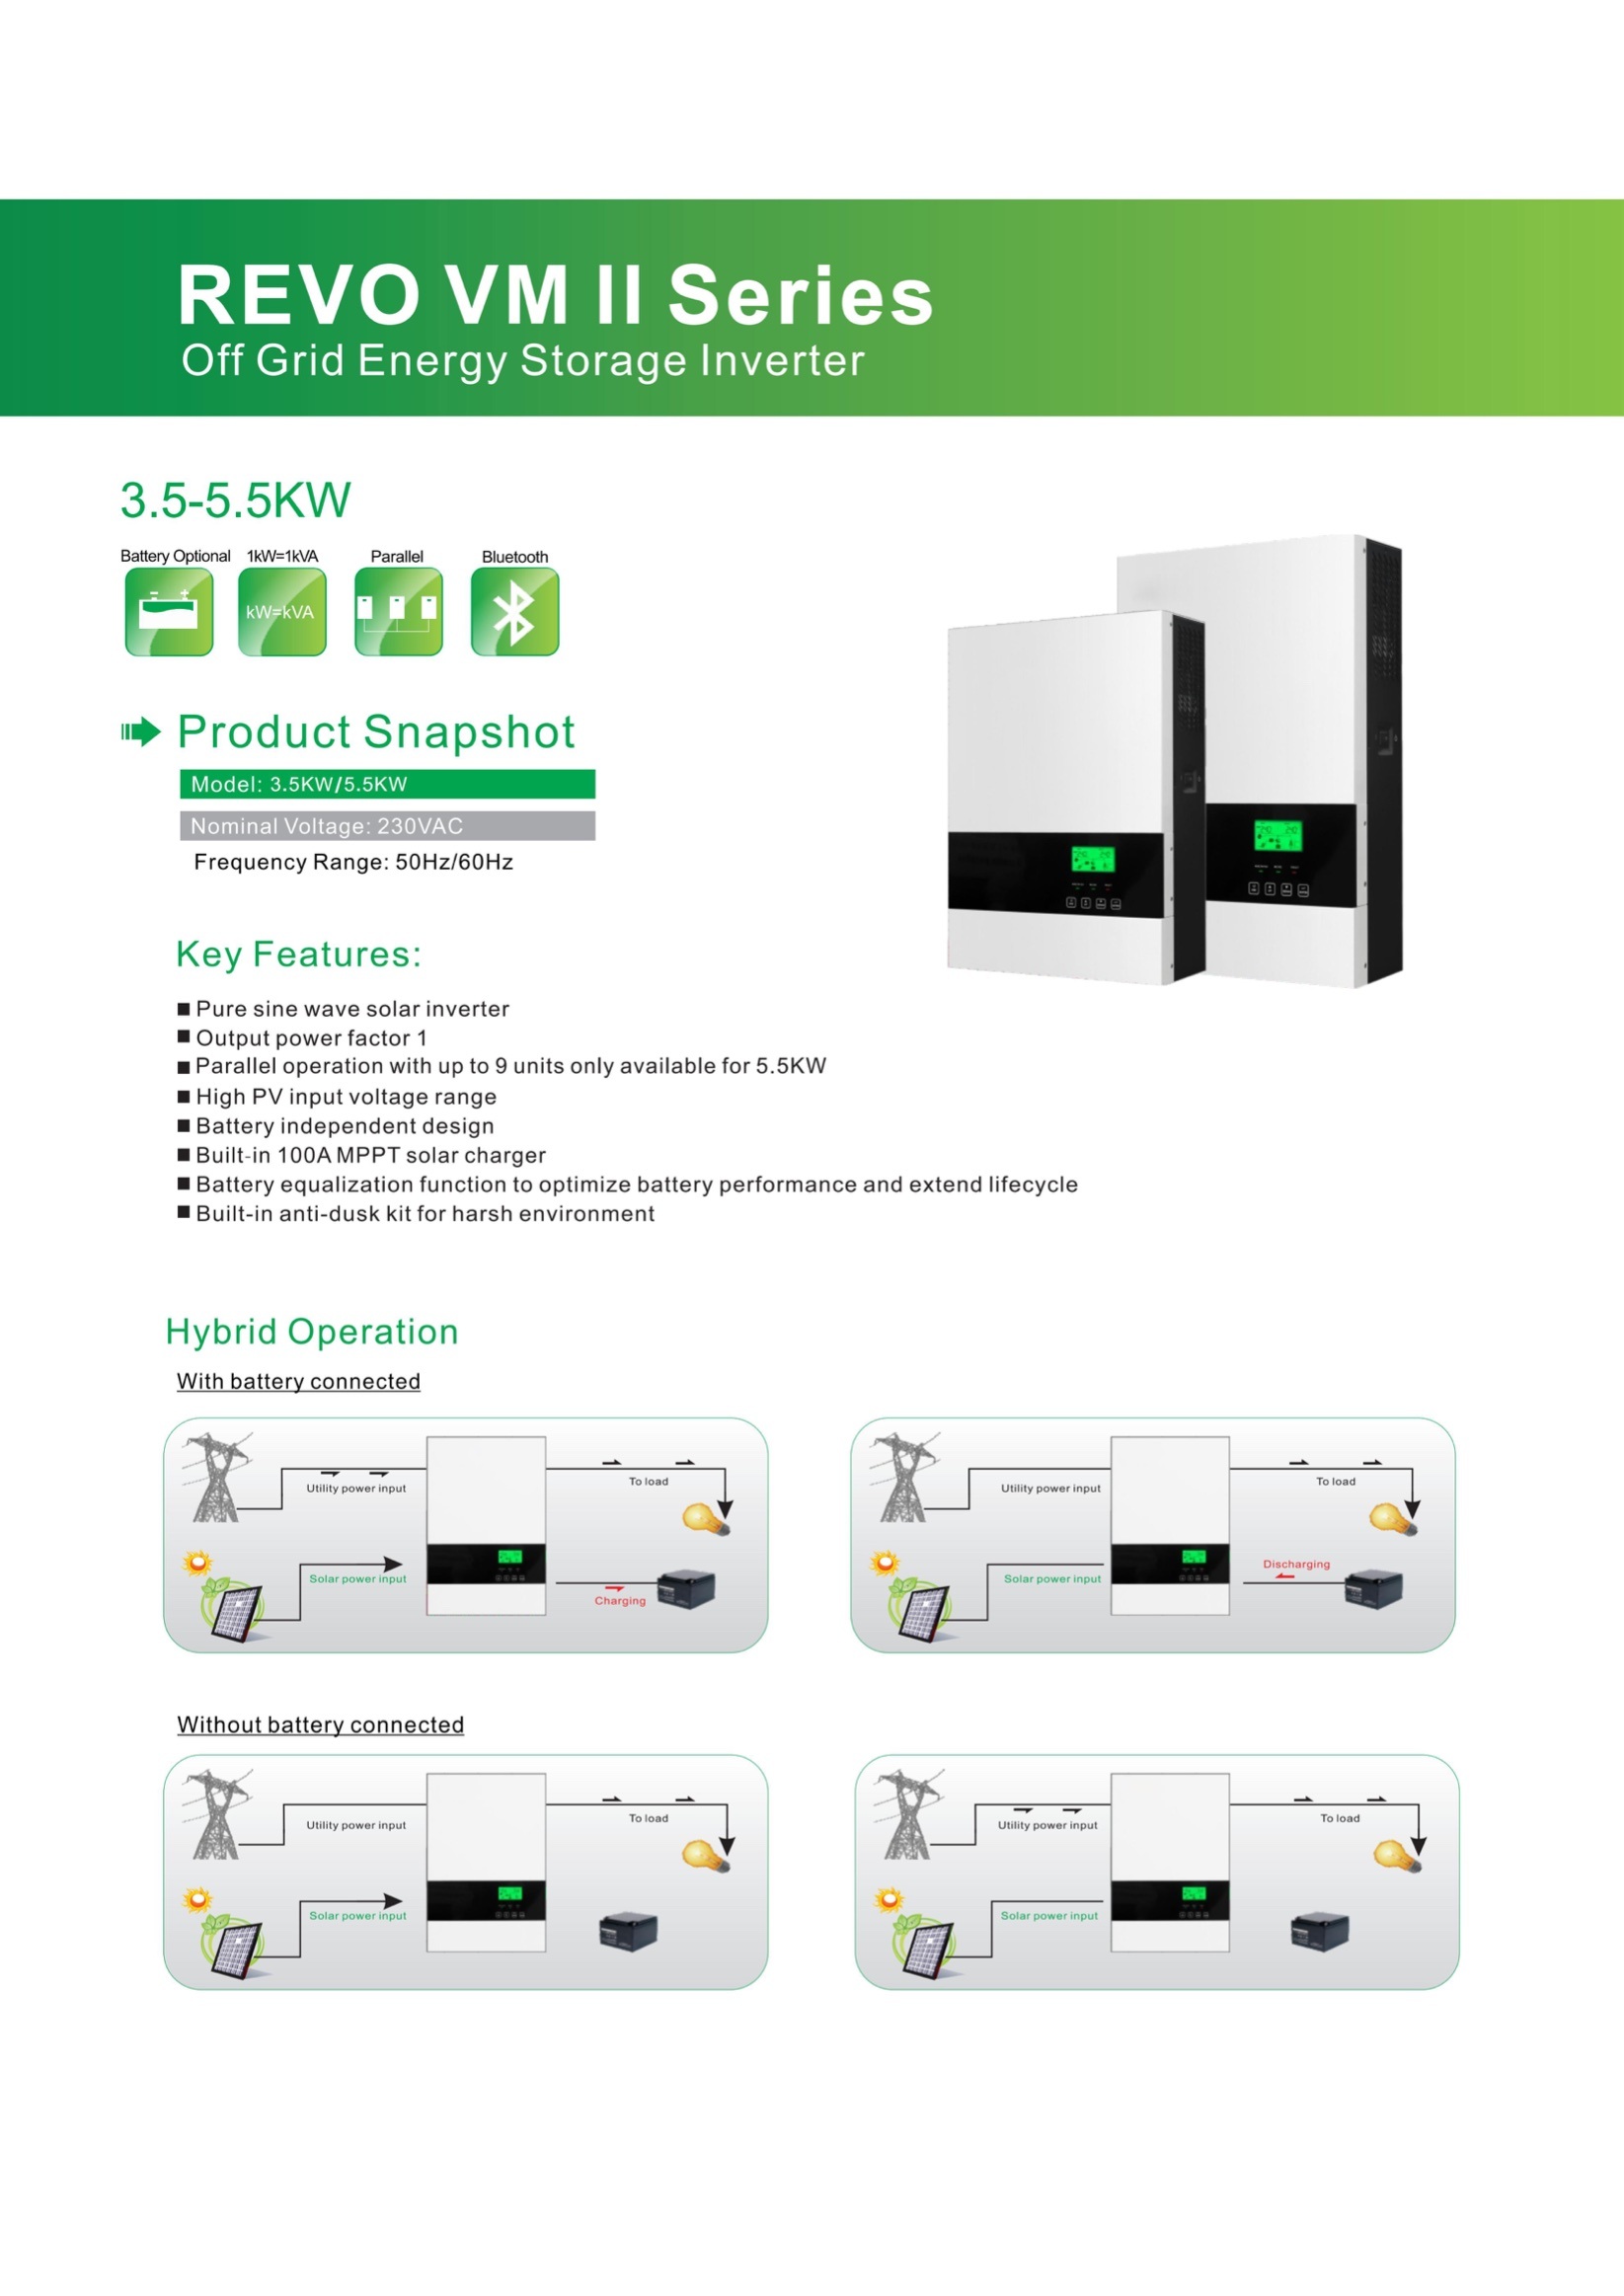 Off Grid Energy Storage Inverter supplier